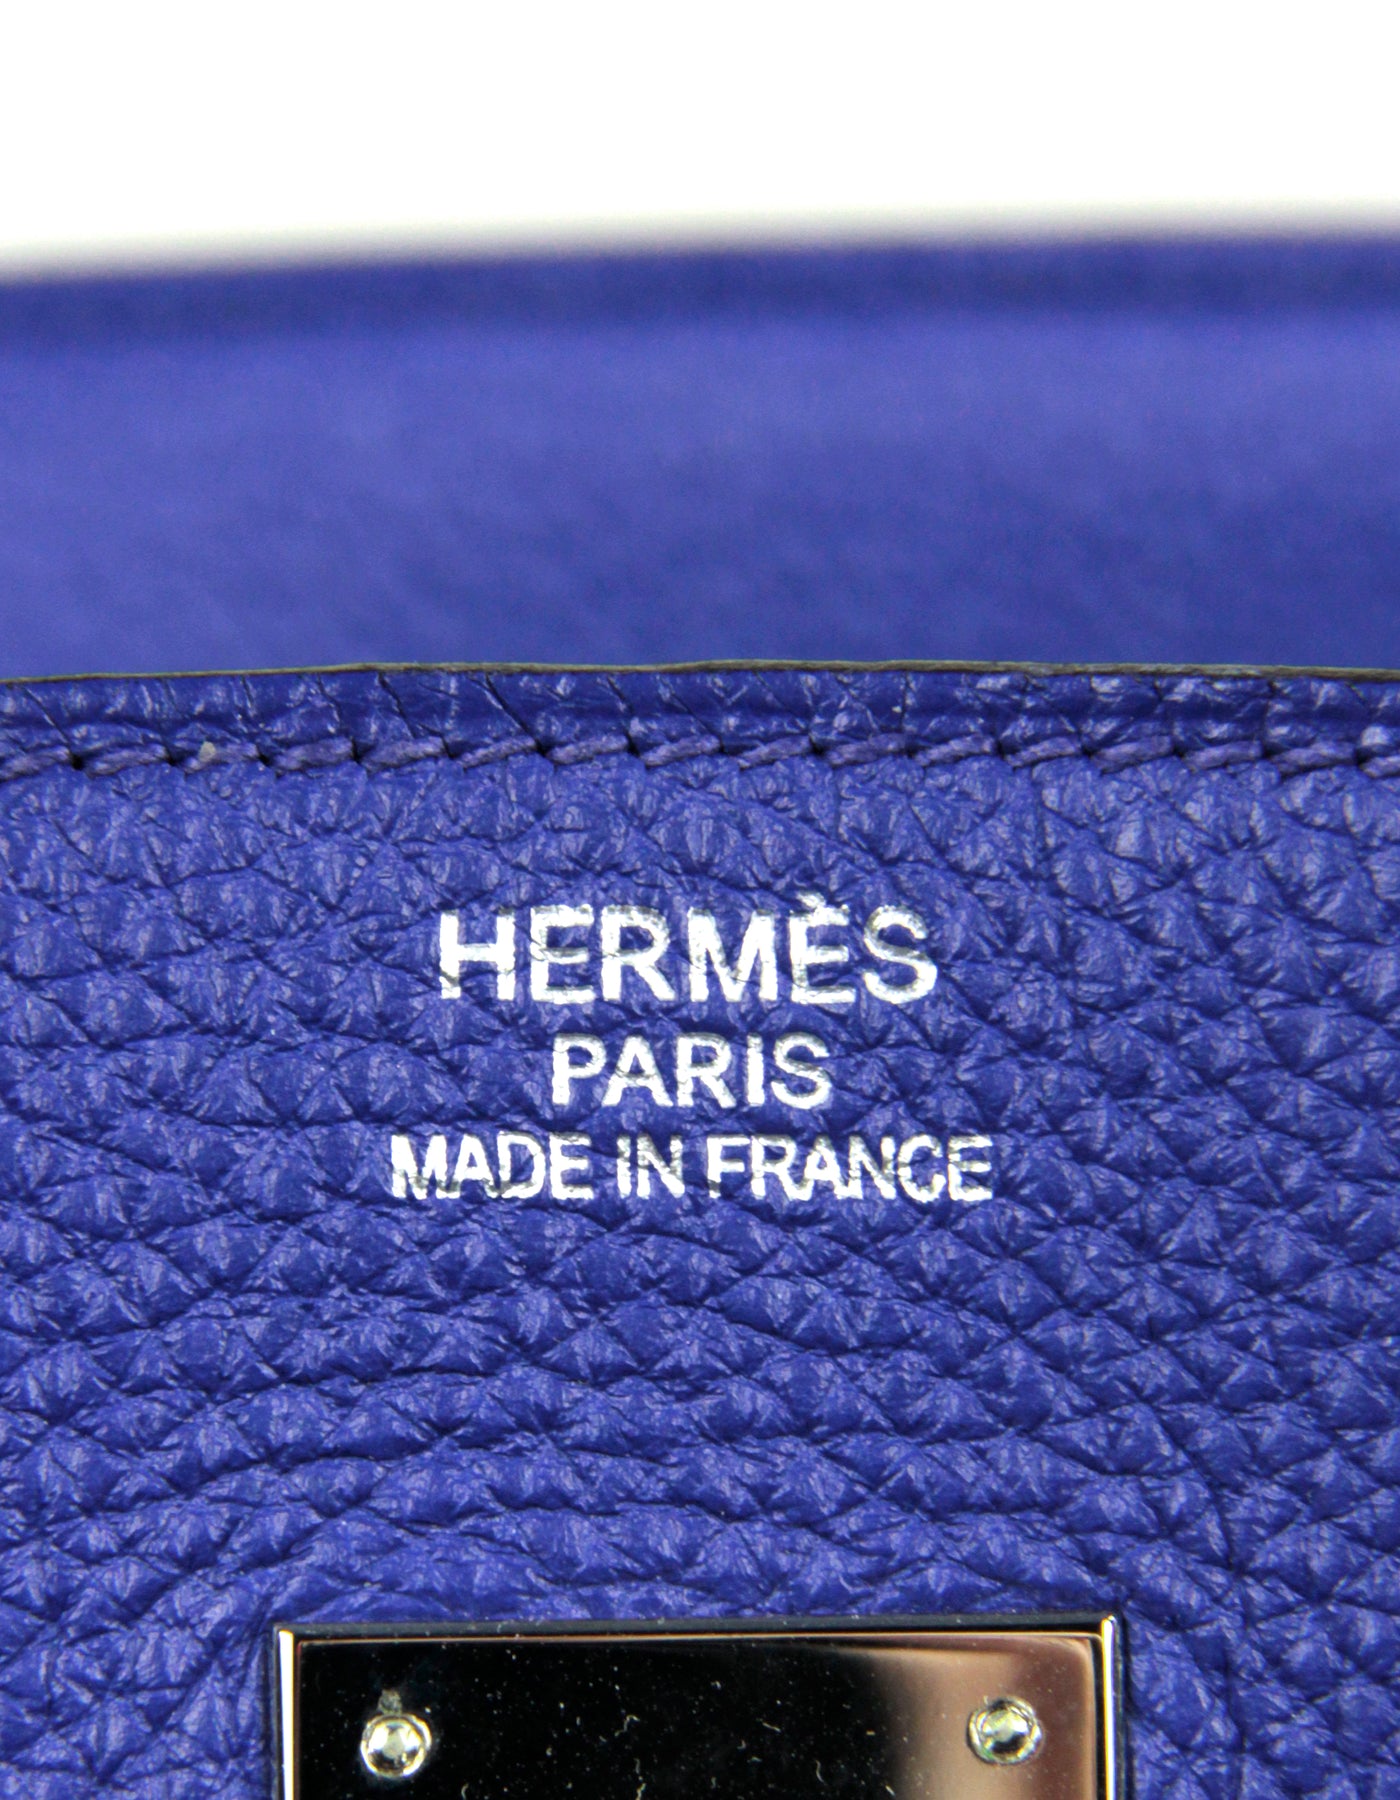 Hermes Black Togo Leather 35cm Birkin Bag GHW